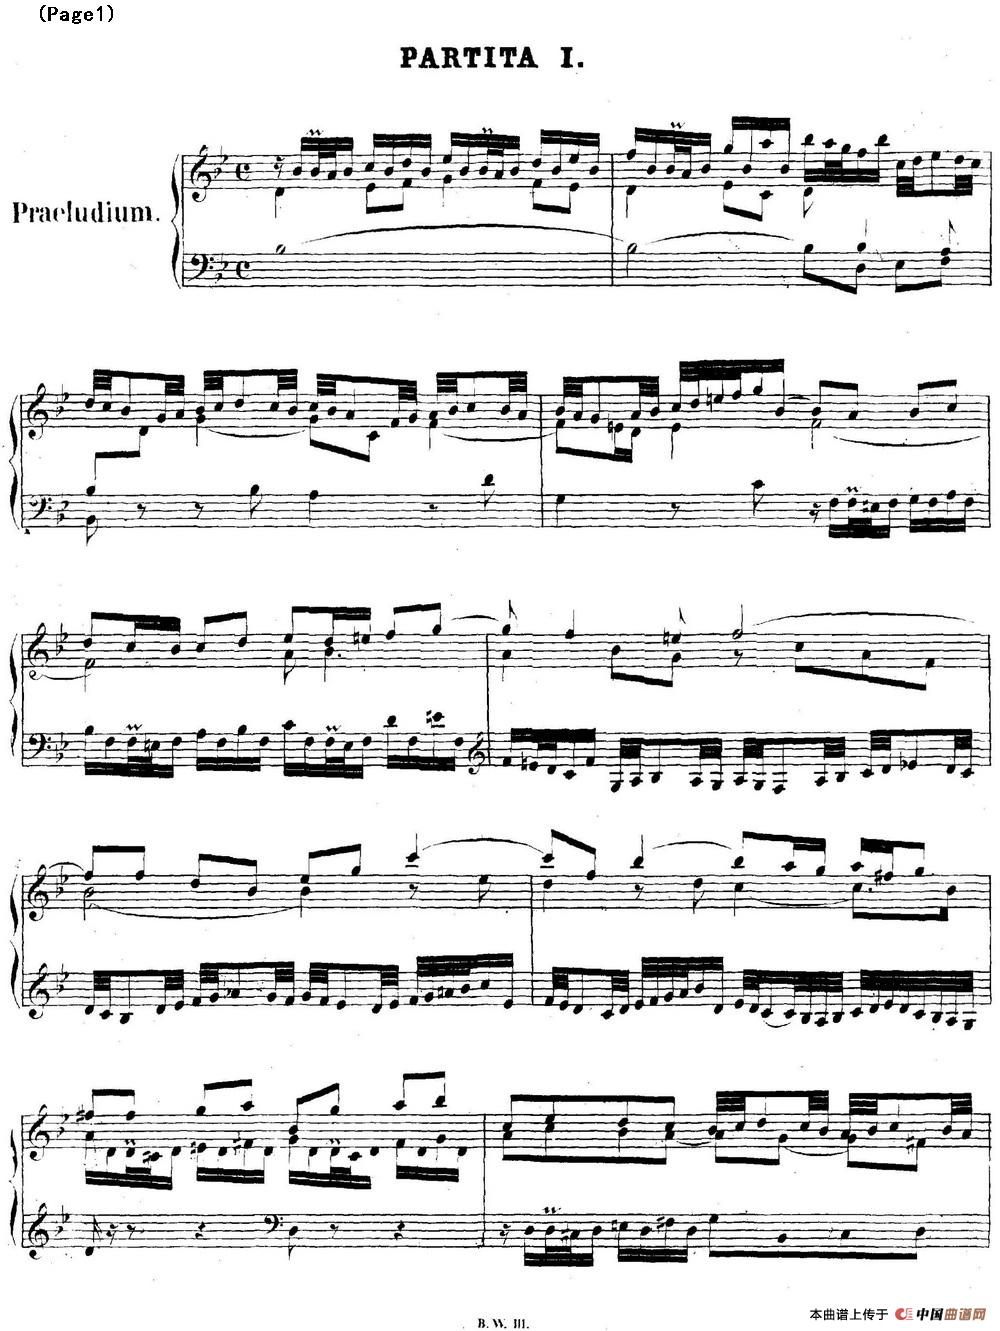 帕蒂塔6首德国组曲（No.1 降B大调 巴赫 Partita B-flat Major BWV825）(1)_BWV0825_页面_01.jpg